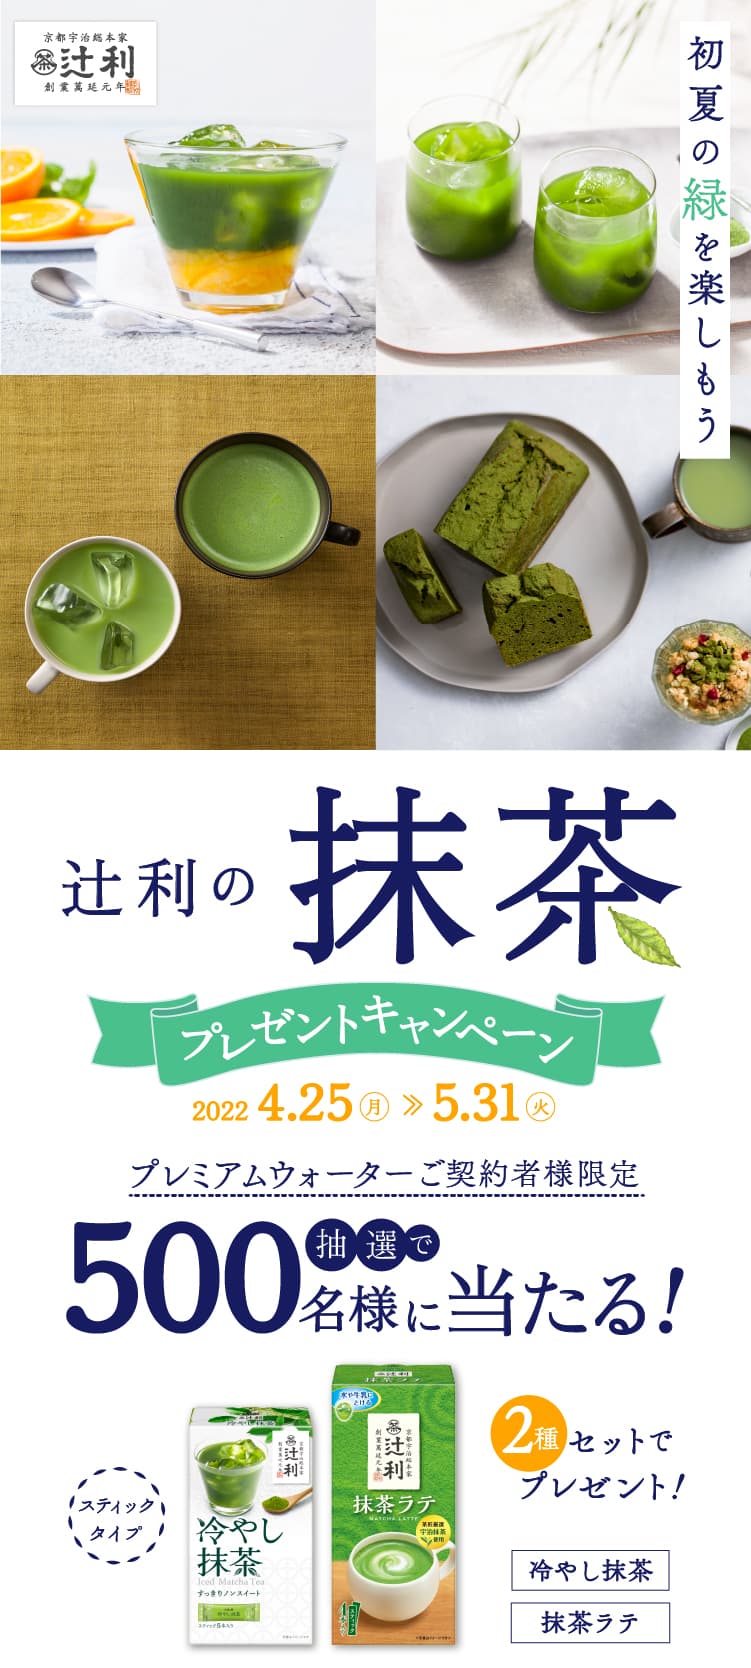 ～初夏の緑を楽しもう～辻利の抹茶プレゼントキャンペーン 2022.4.25(月)~2022.5.31(火)